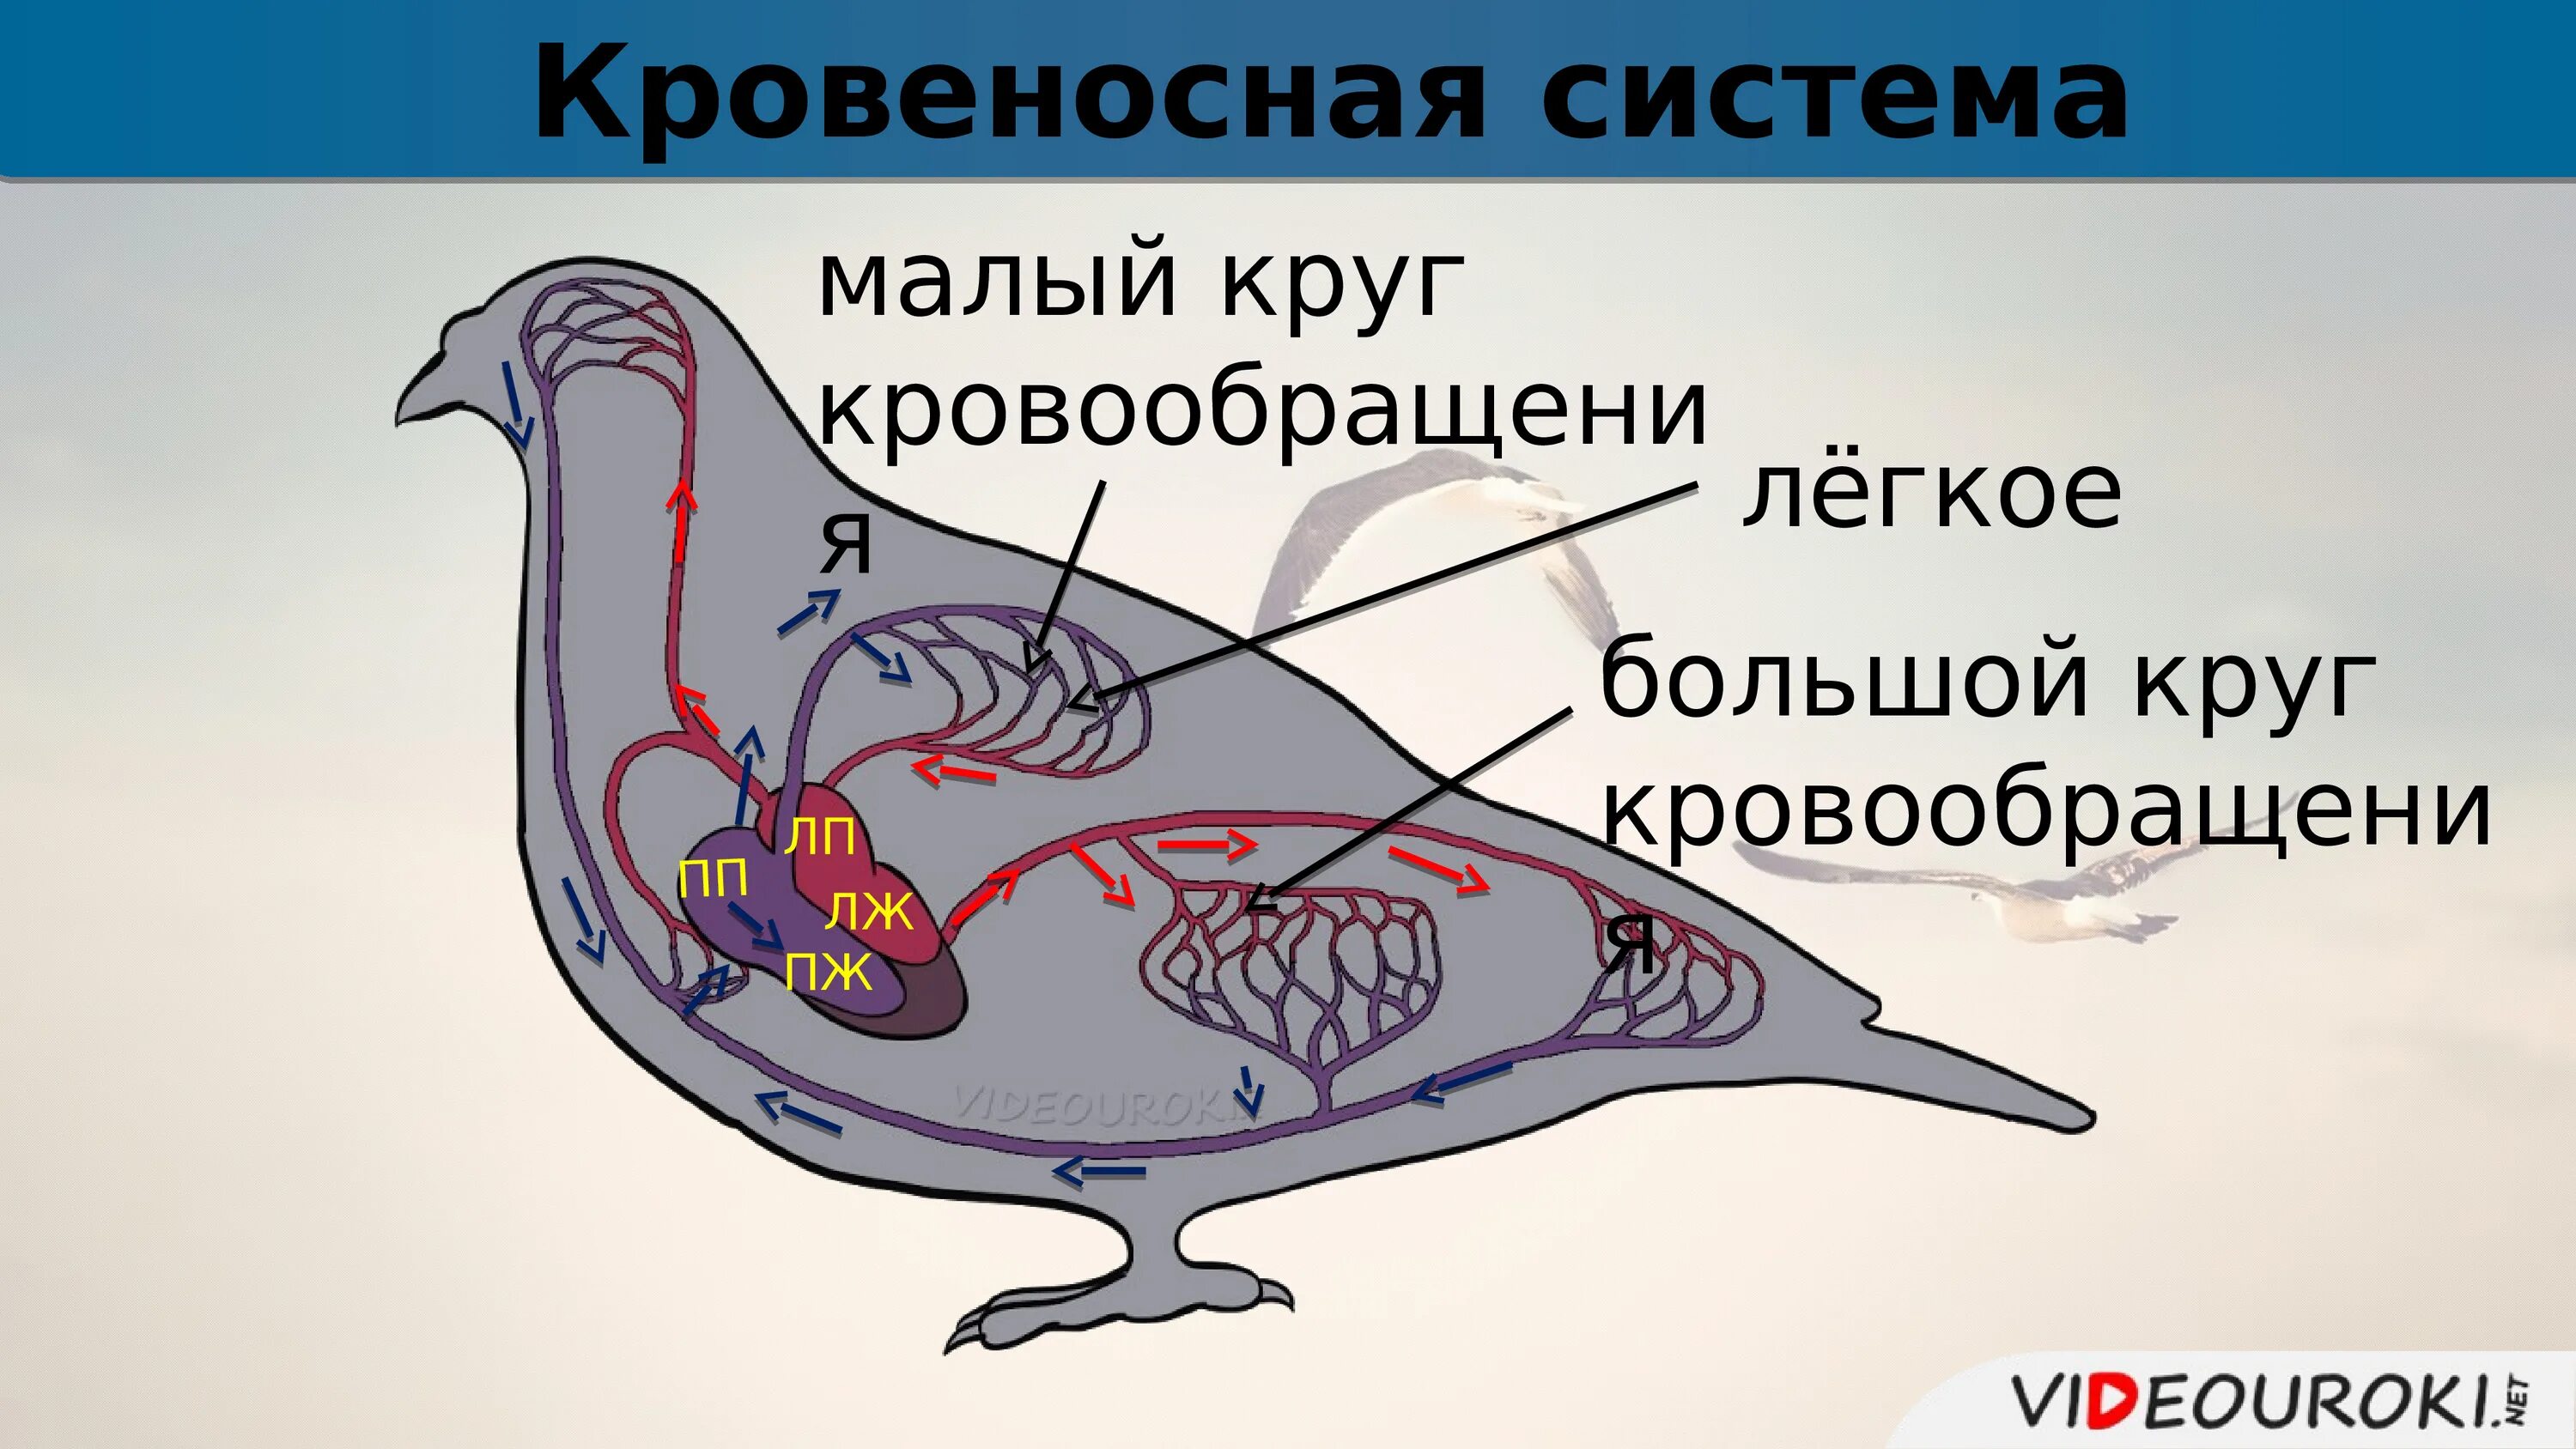 Кровеносная система птиц круги кровообращения. Кровеносная система птиц схема кругов кровообращения. Схема строения кровеносной системы птиц. Кровеносная система птиц большой и малый круг. Схема кровообращения птиц